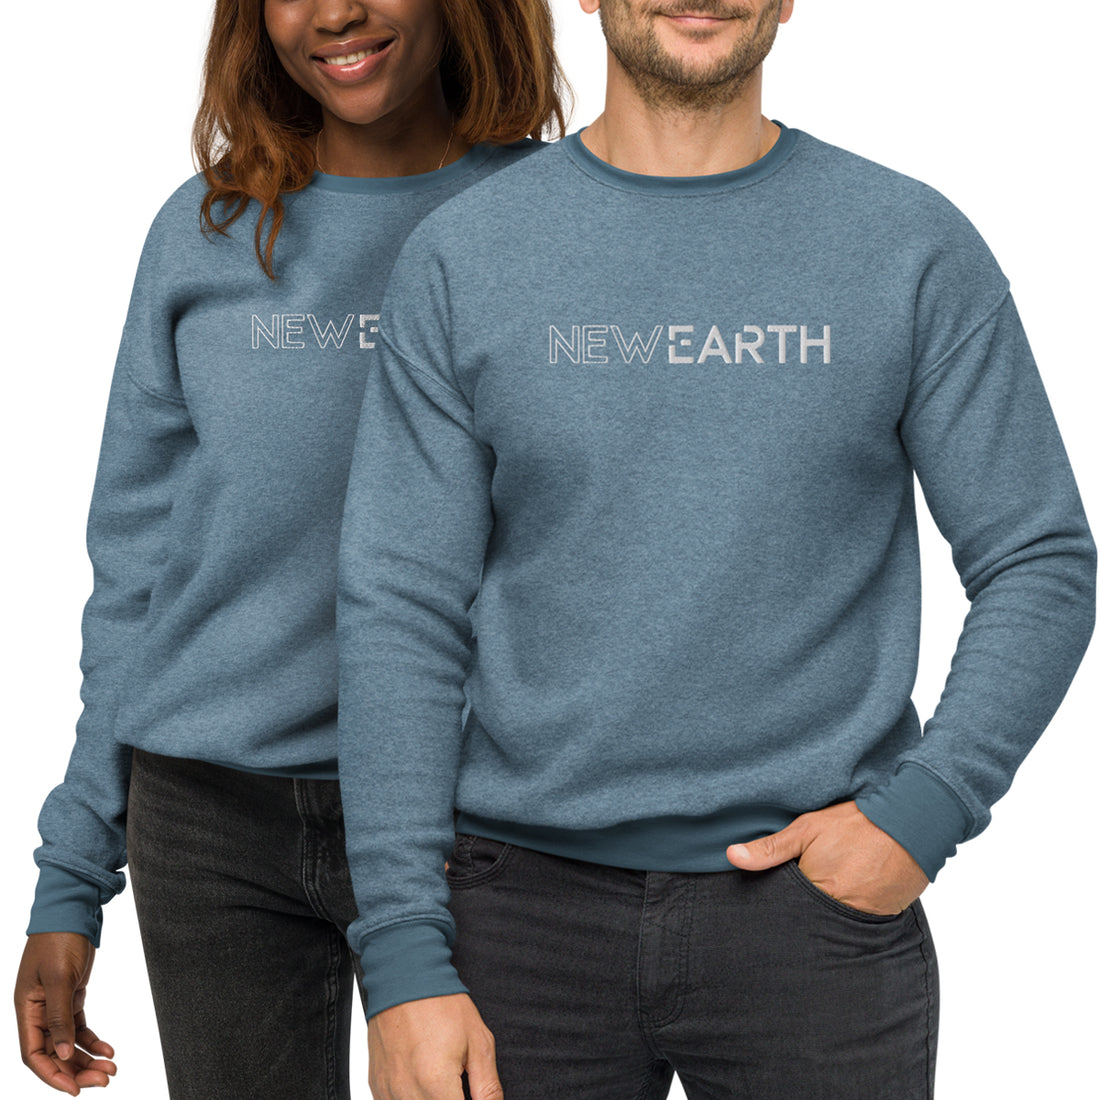 New Earth - Unisex Sueded Fleece Sweatshirt